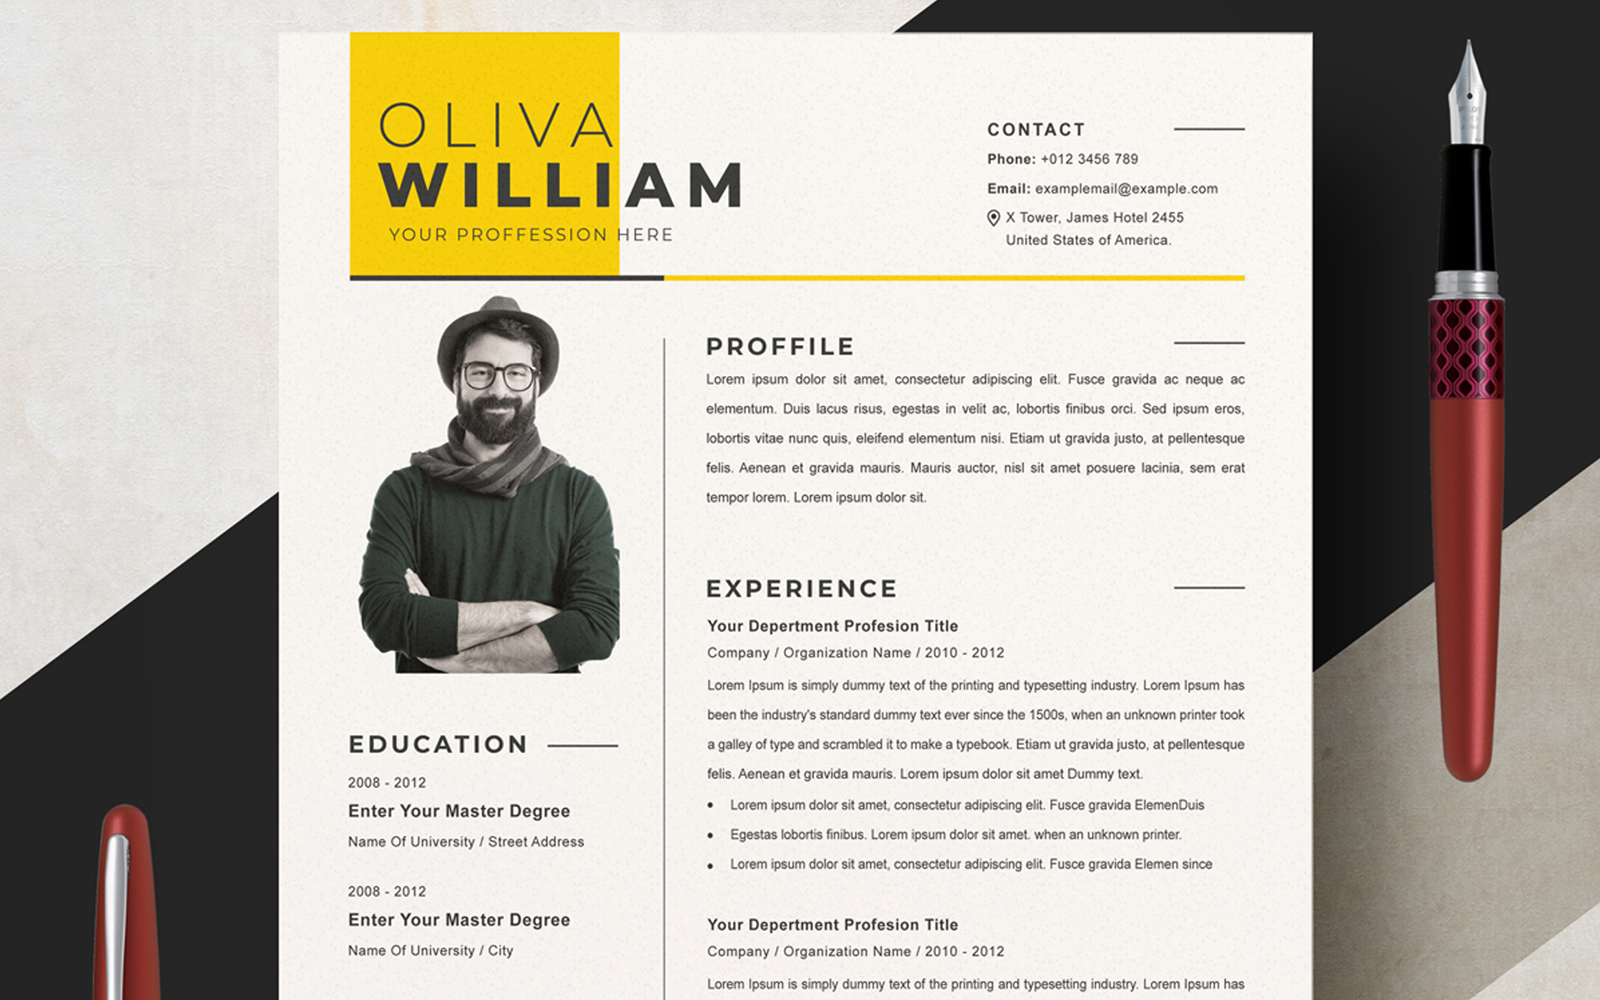 Oliva William / CV Template